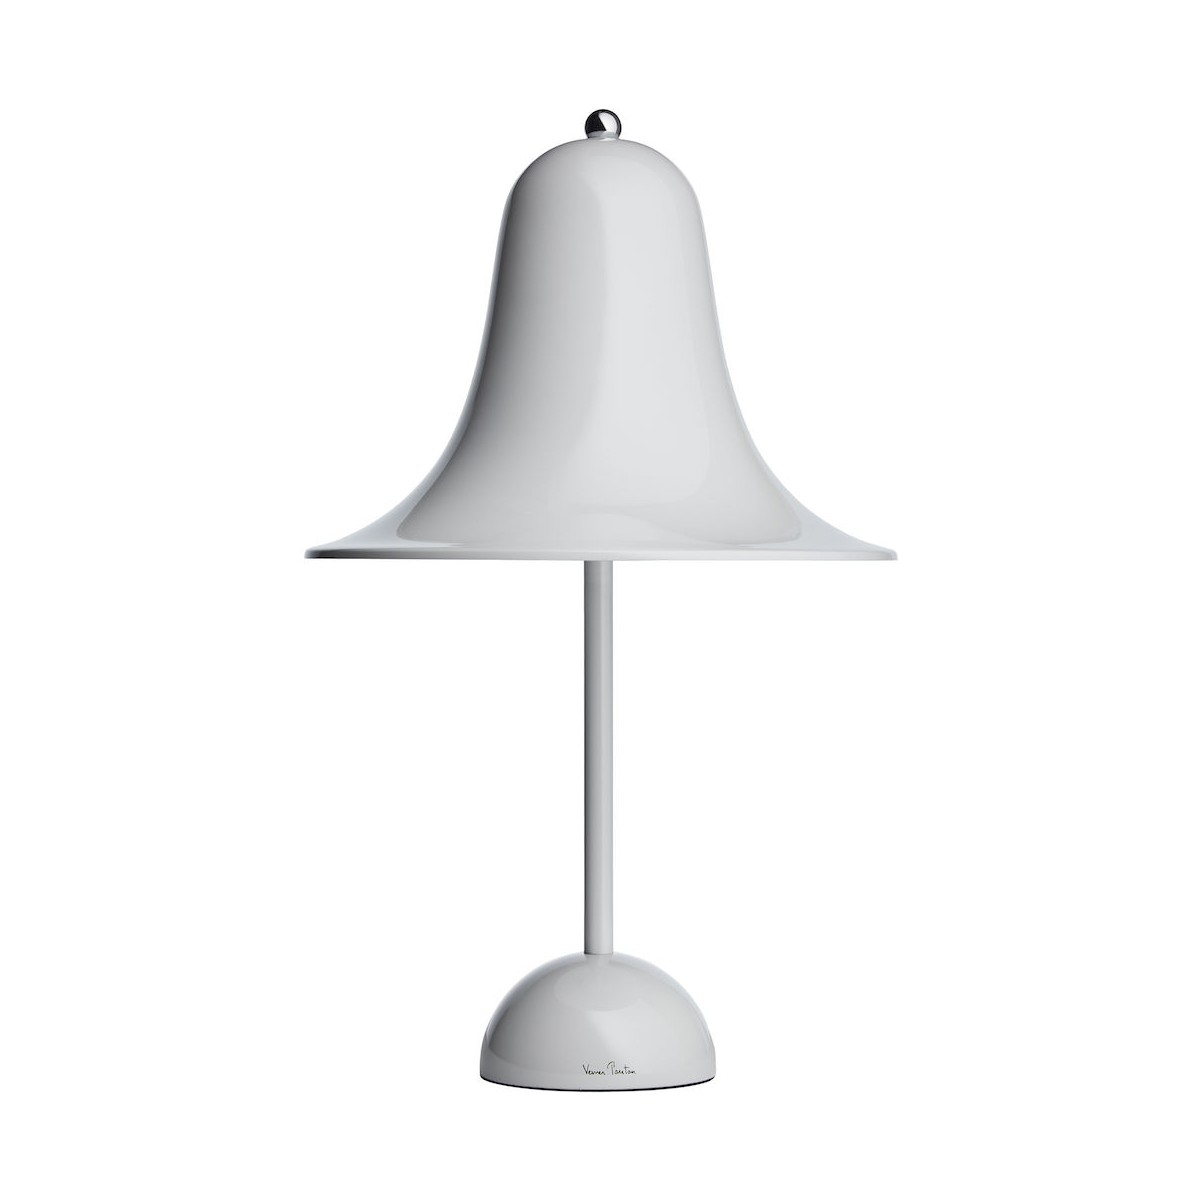 gris menthe - lampe de table Pantop